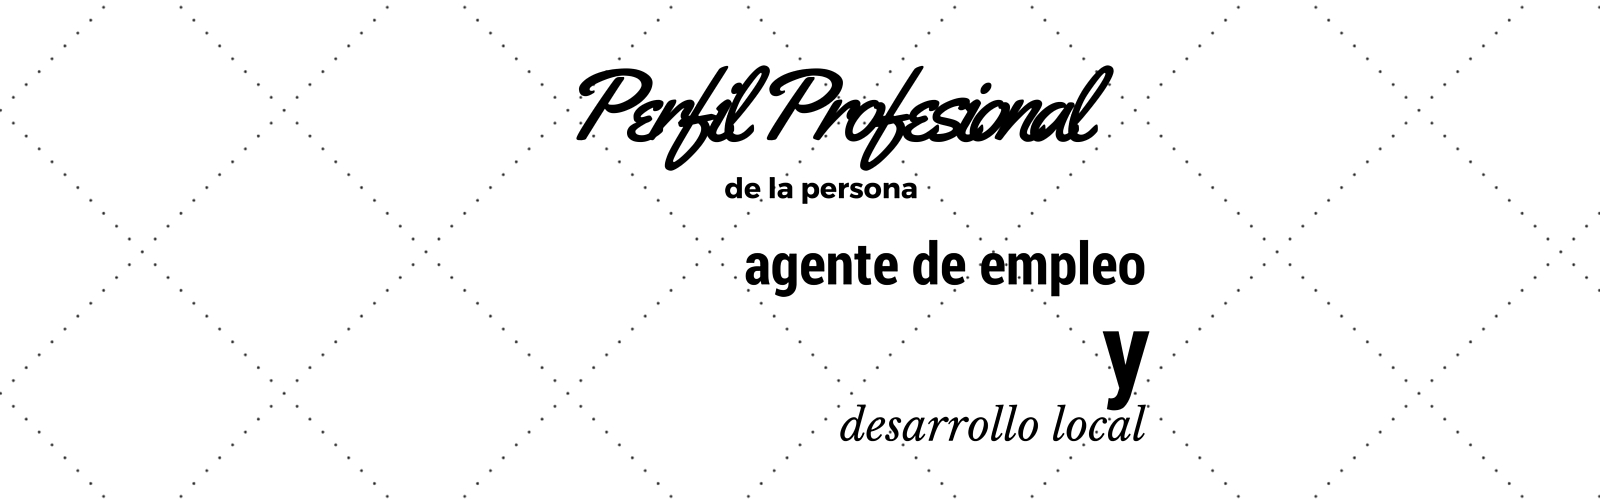 Perfil Profesional de la Persona Agente de Empleo y Desarrollo Local.